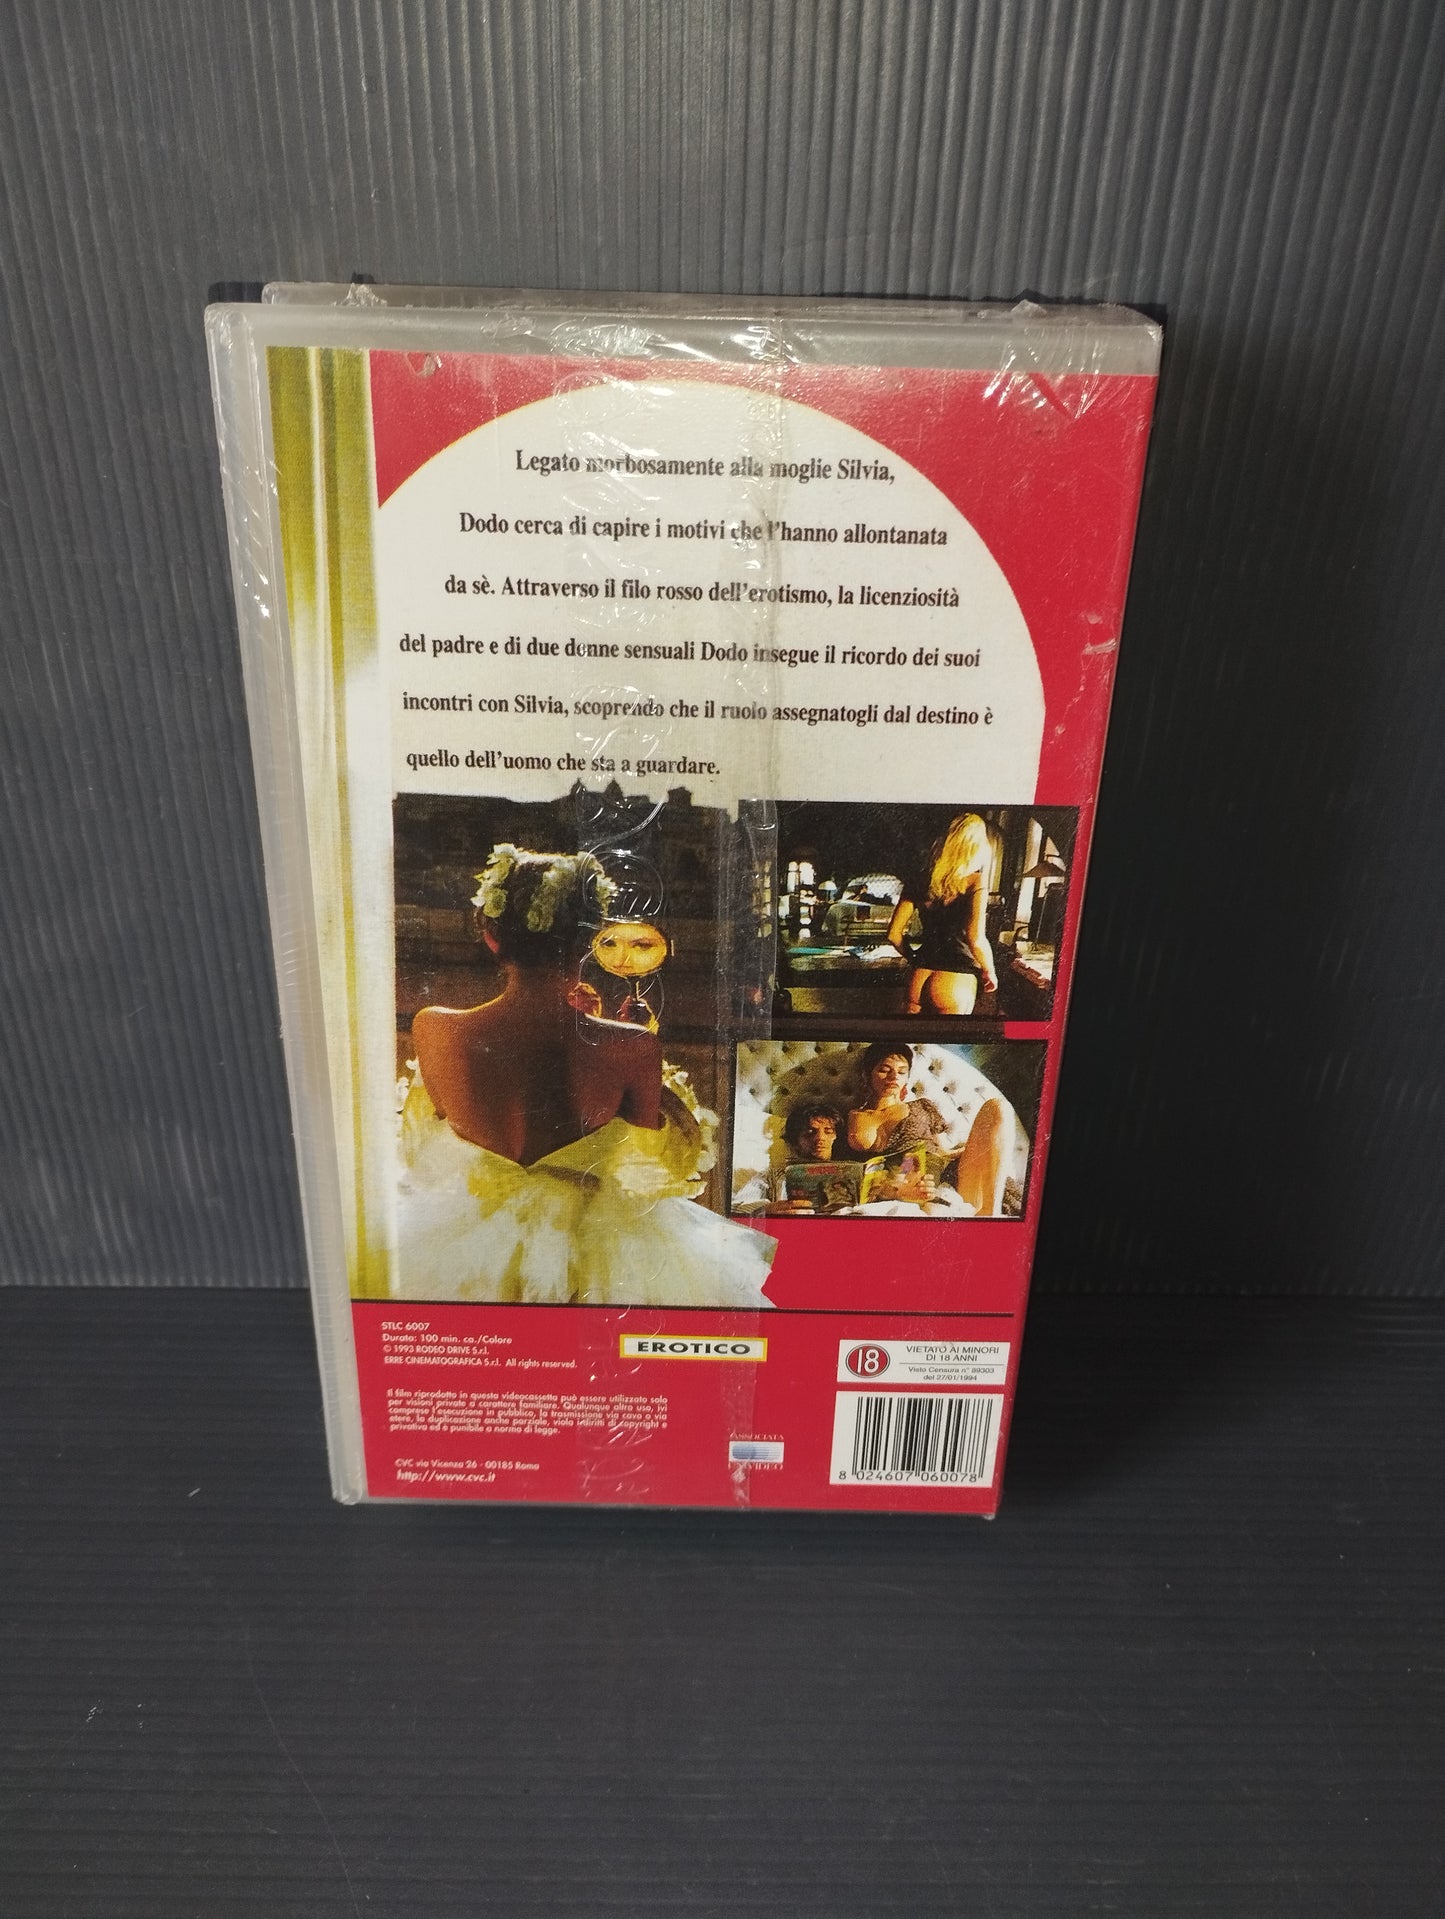 VHS " L'Uomo che guarda" Tinto Brass

Edita nel 1993 da CVC Sigillata